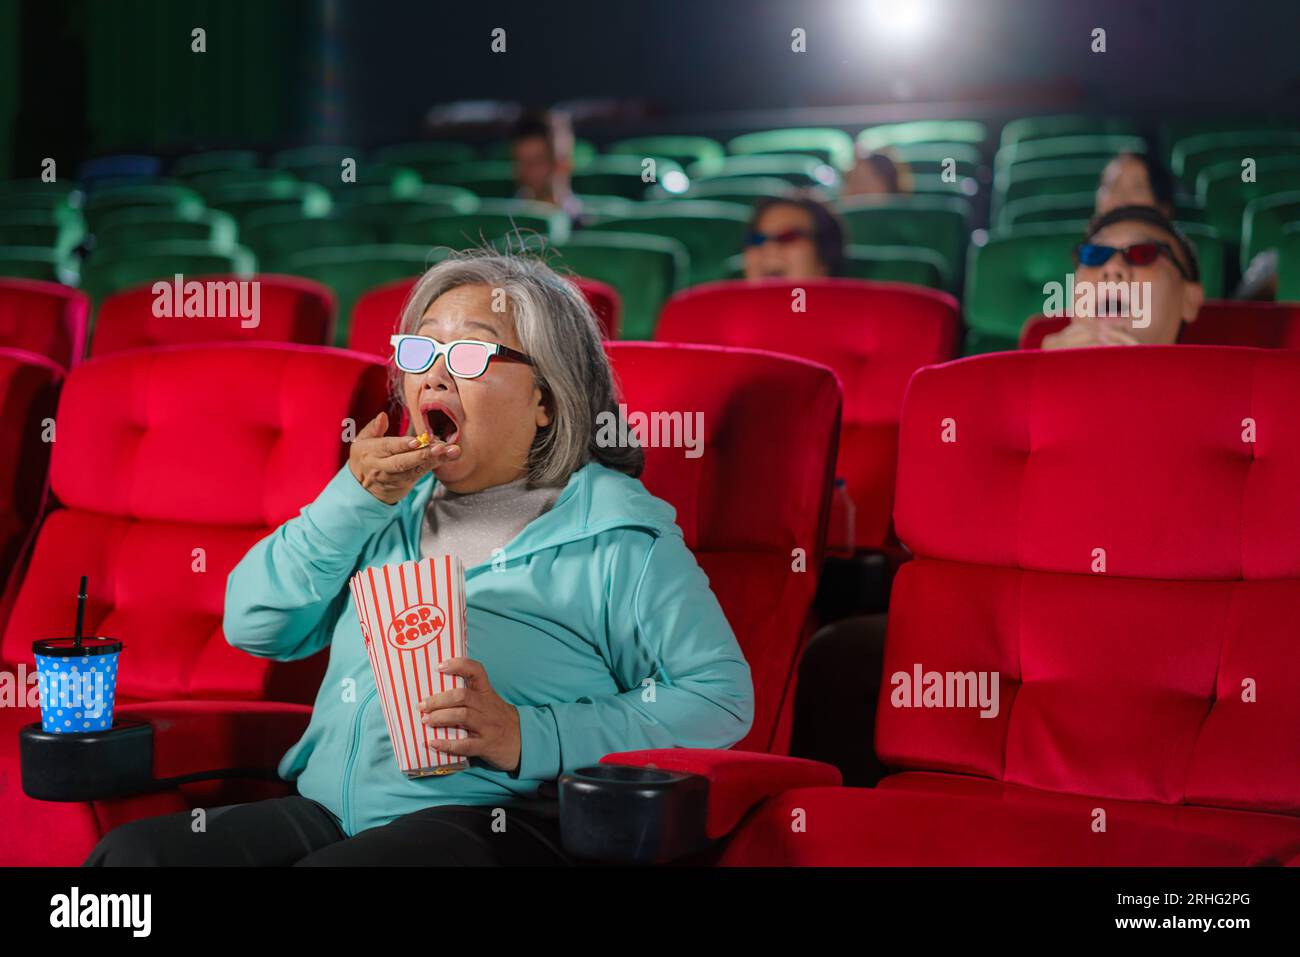 Le donne anziane asiatiche con gli occhiali guardano con entusiasmo film 3D, popcorn in mano, per vivere un'esperienza coinvolgente. Foto Stock